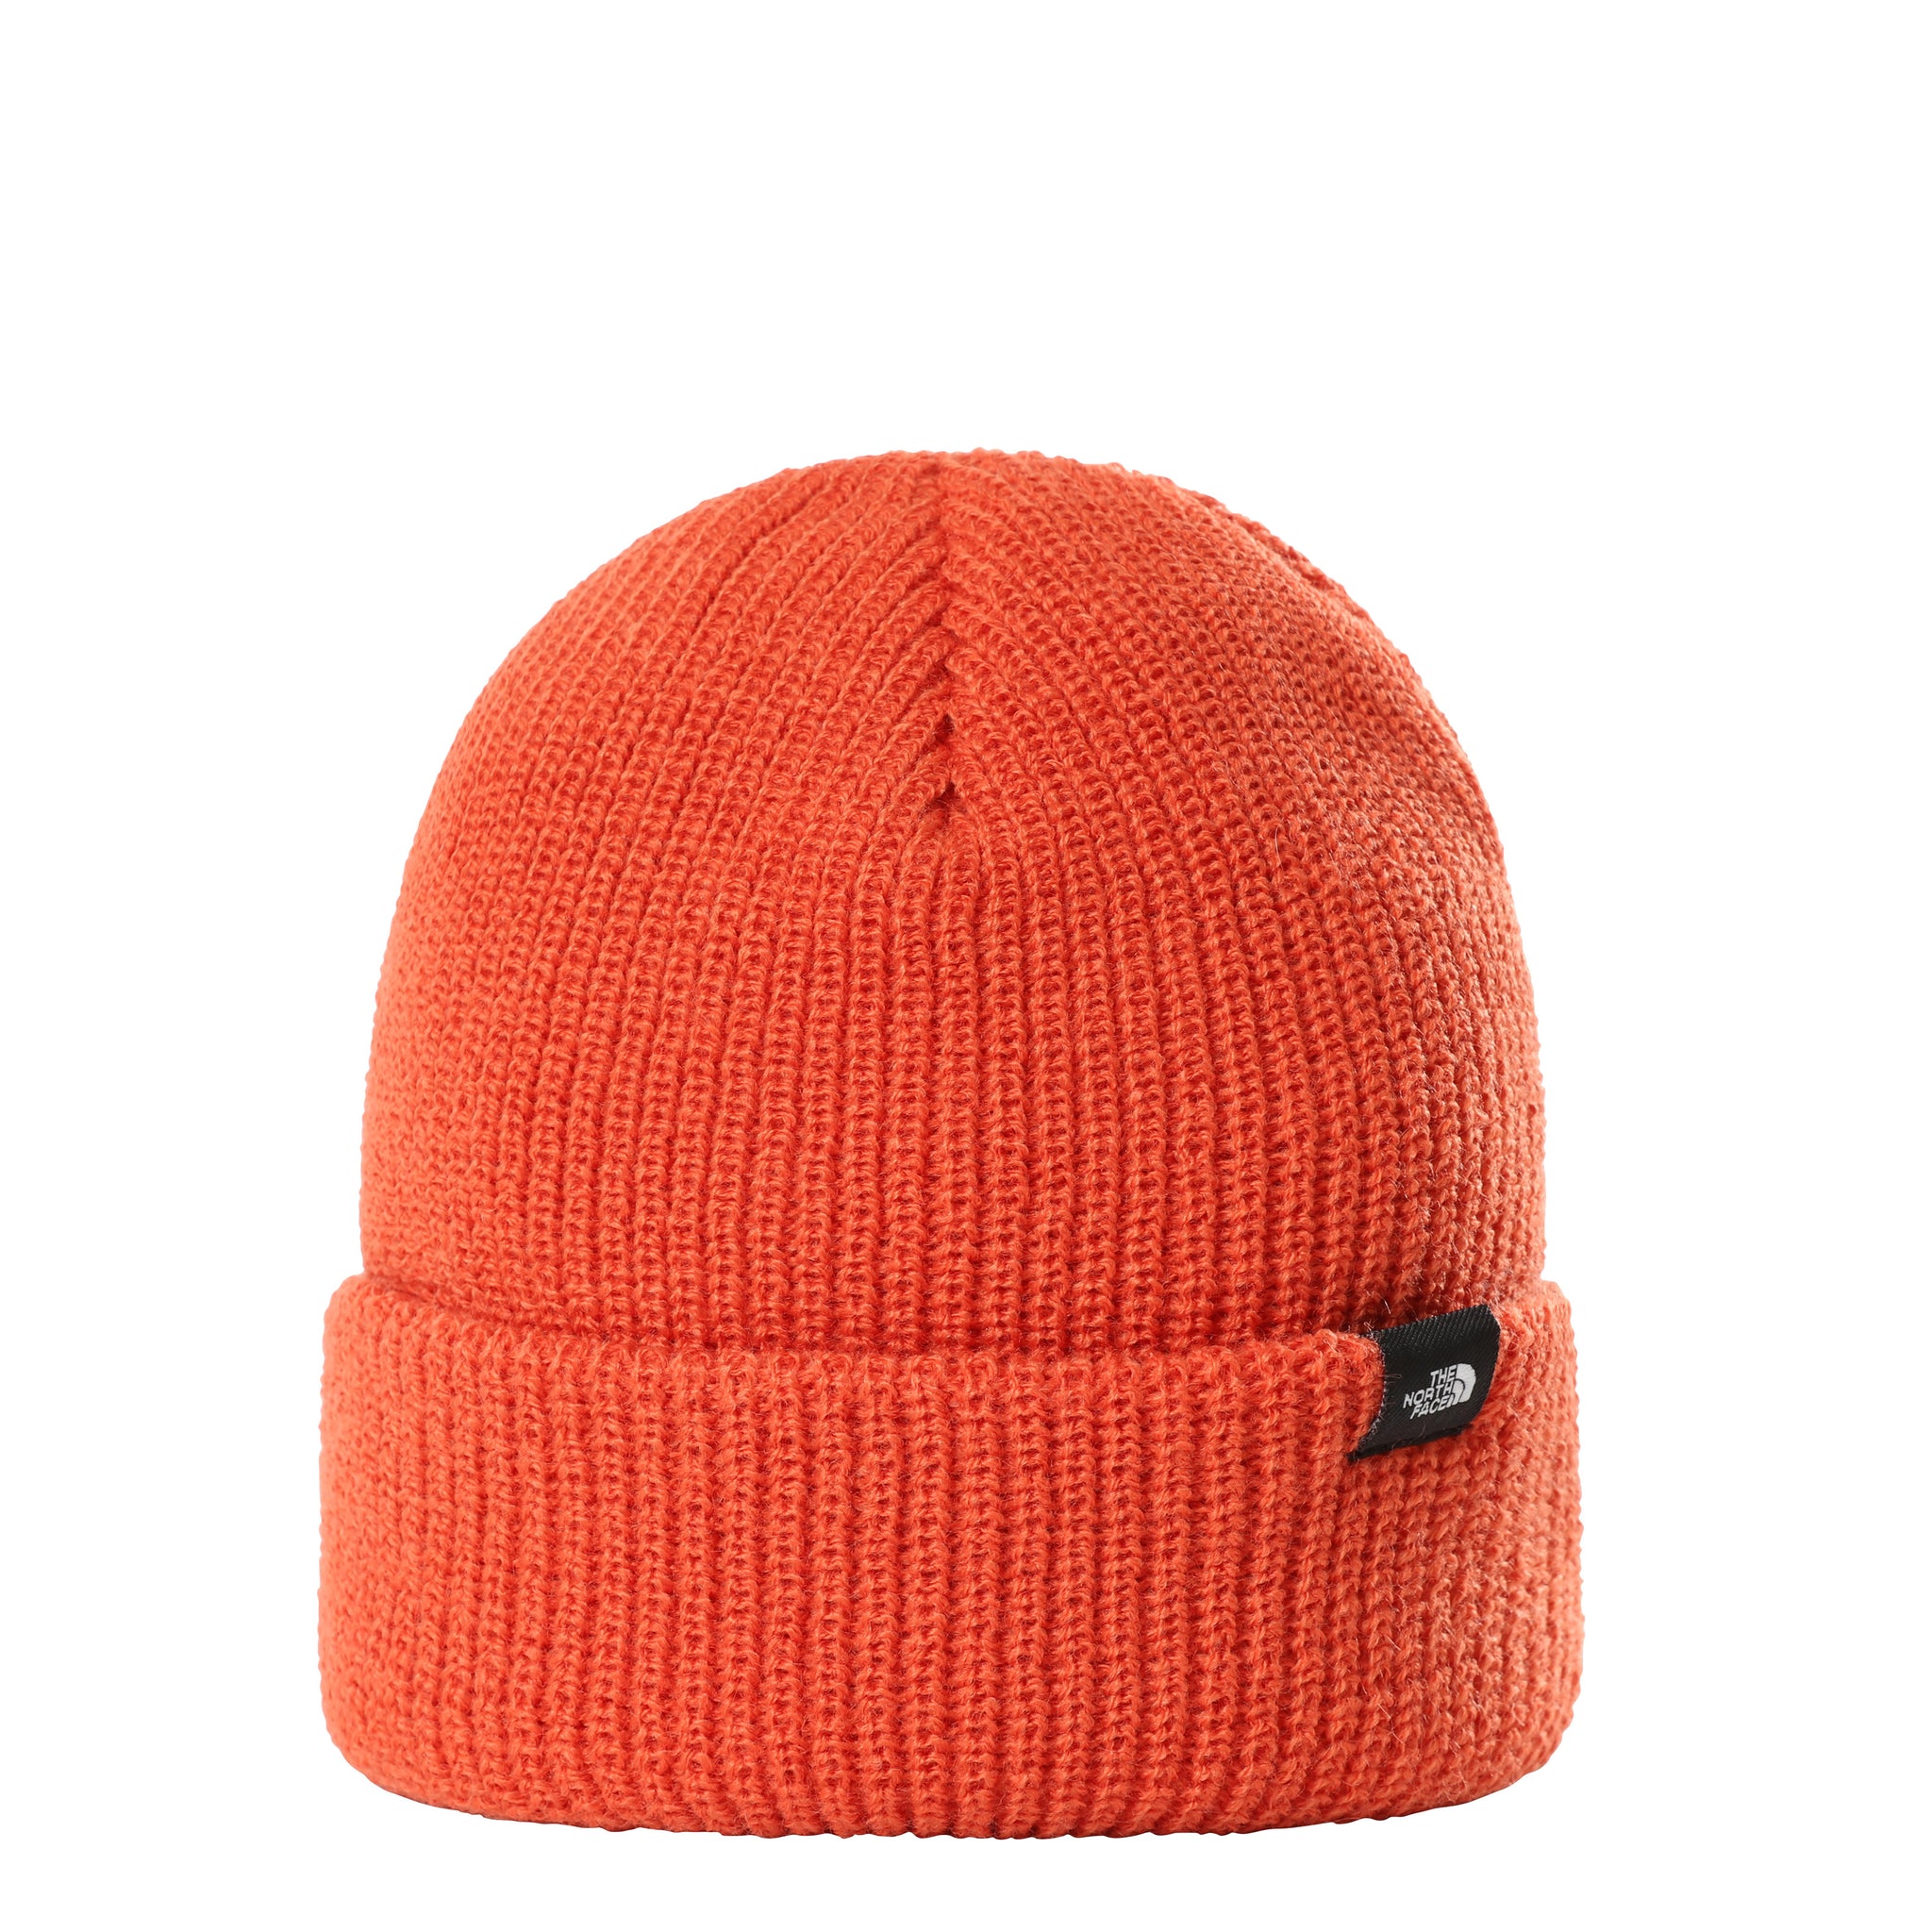 Cappello The North Face / Arancione - Ideal Moda